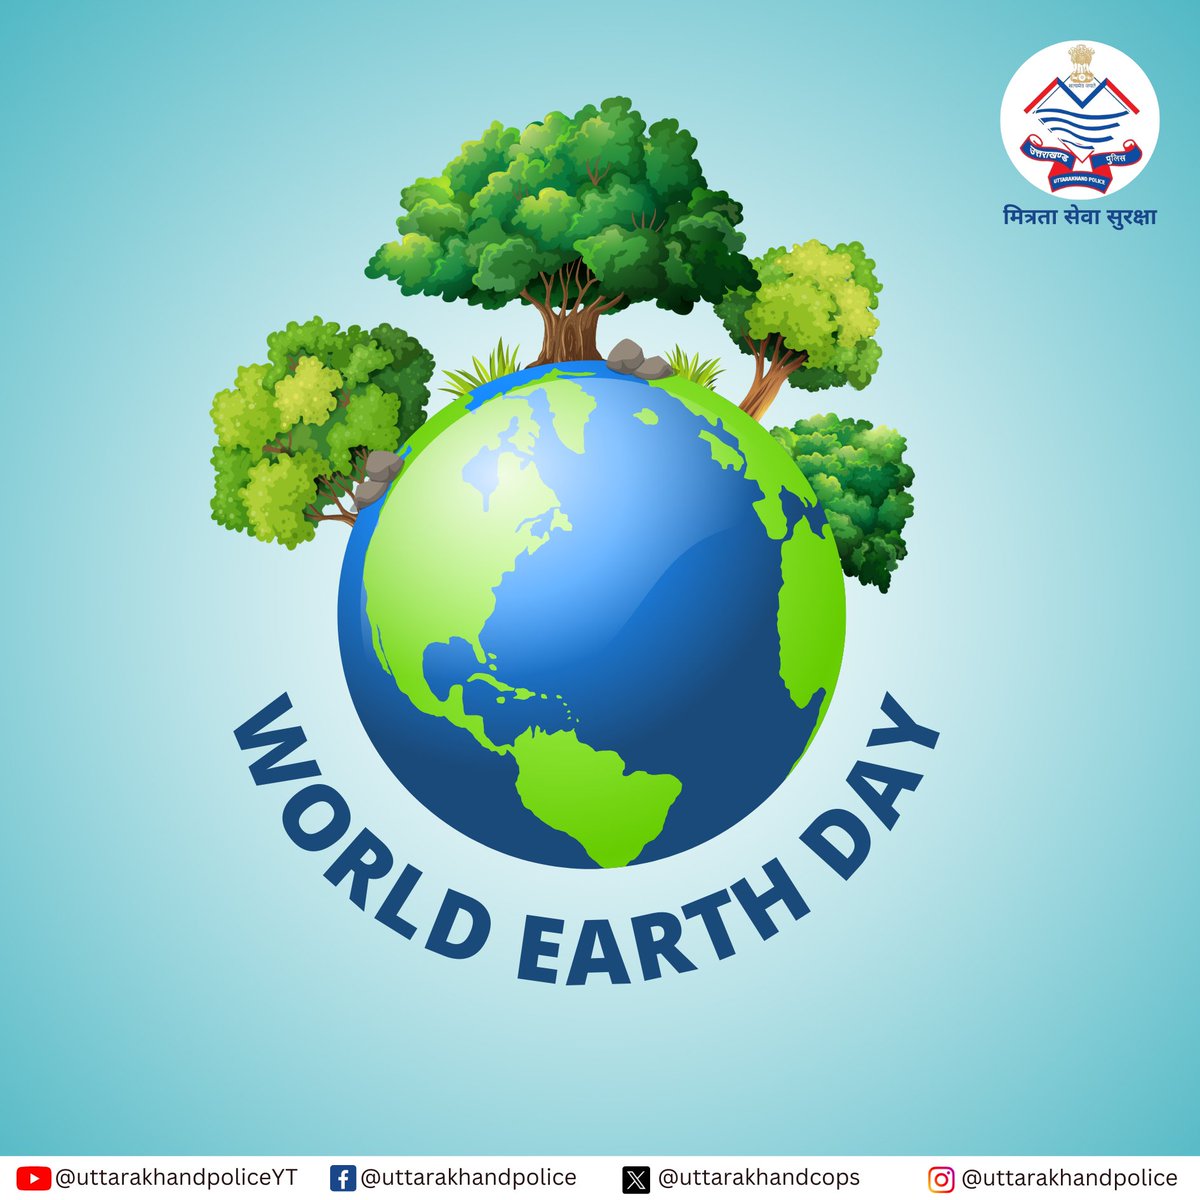 आप सभी को पृथ्वी दिवस की हार्दिक शुभकामनाएं। आइए, इस अवसर पर अपनी इस पवित्र धरा को साफ़-स्वच्छ और हरा-भरा बनाने का संकल्प करें। #EarthDay #WorldEarthDay